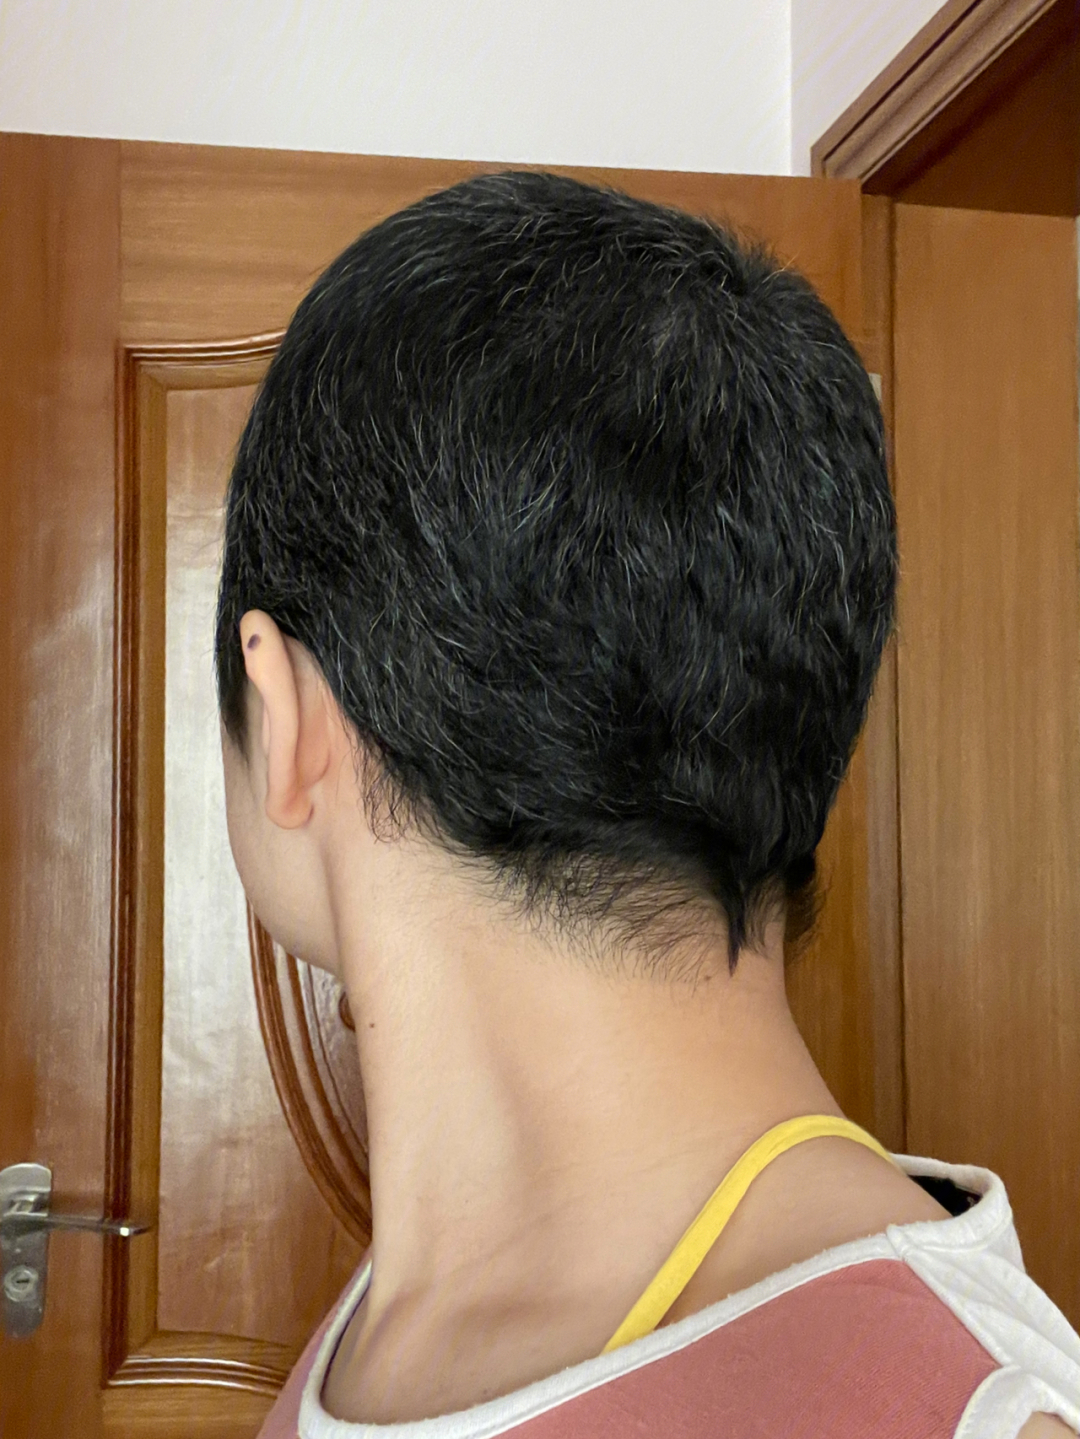 前两天刷到一个光头小妹蓄发过程图发现我三个月的头发长度等于正常人